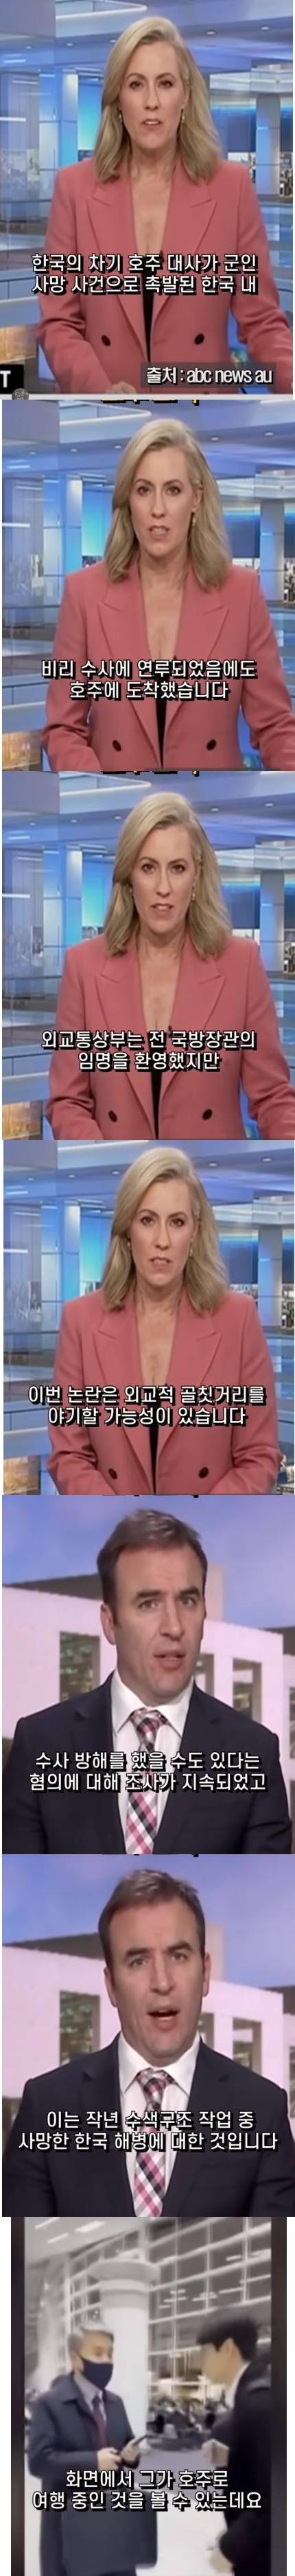 호주 방송에 보도된 한국 대사